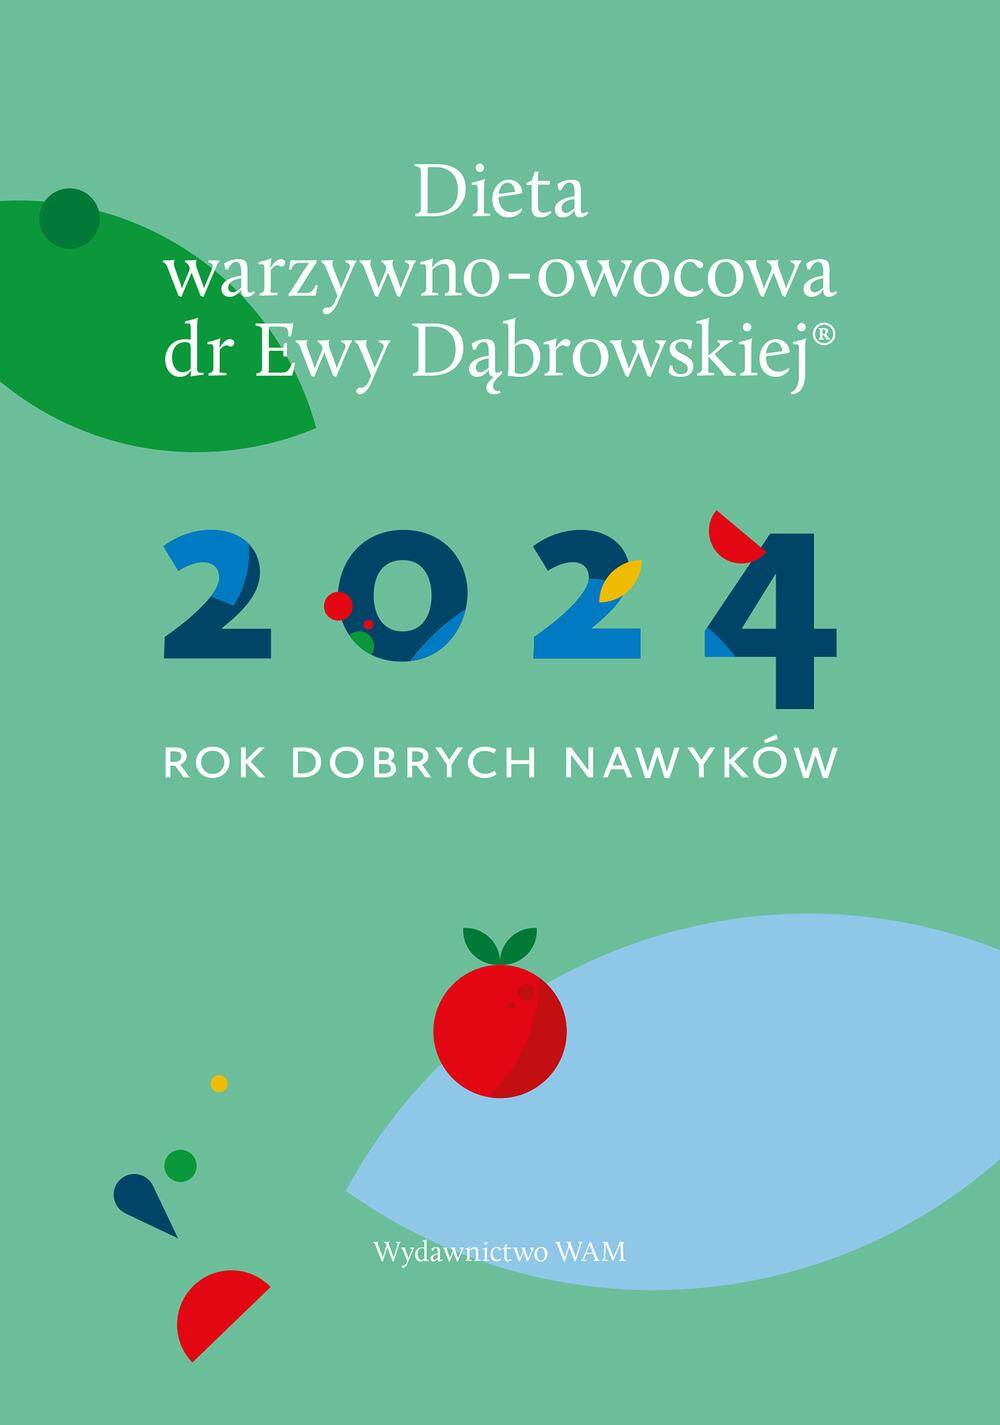 Kalendarz 2024. Rok dobrych nawyków. Dieta warzywno-owocowa dr Ewy Dąbrowskiej